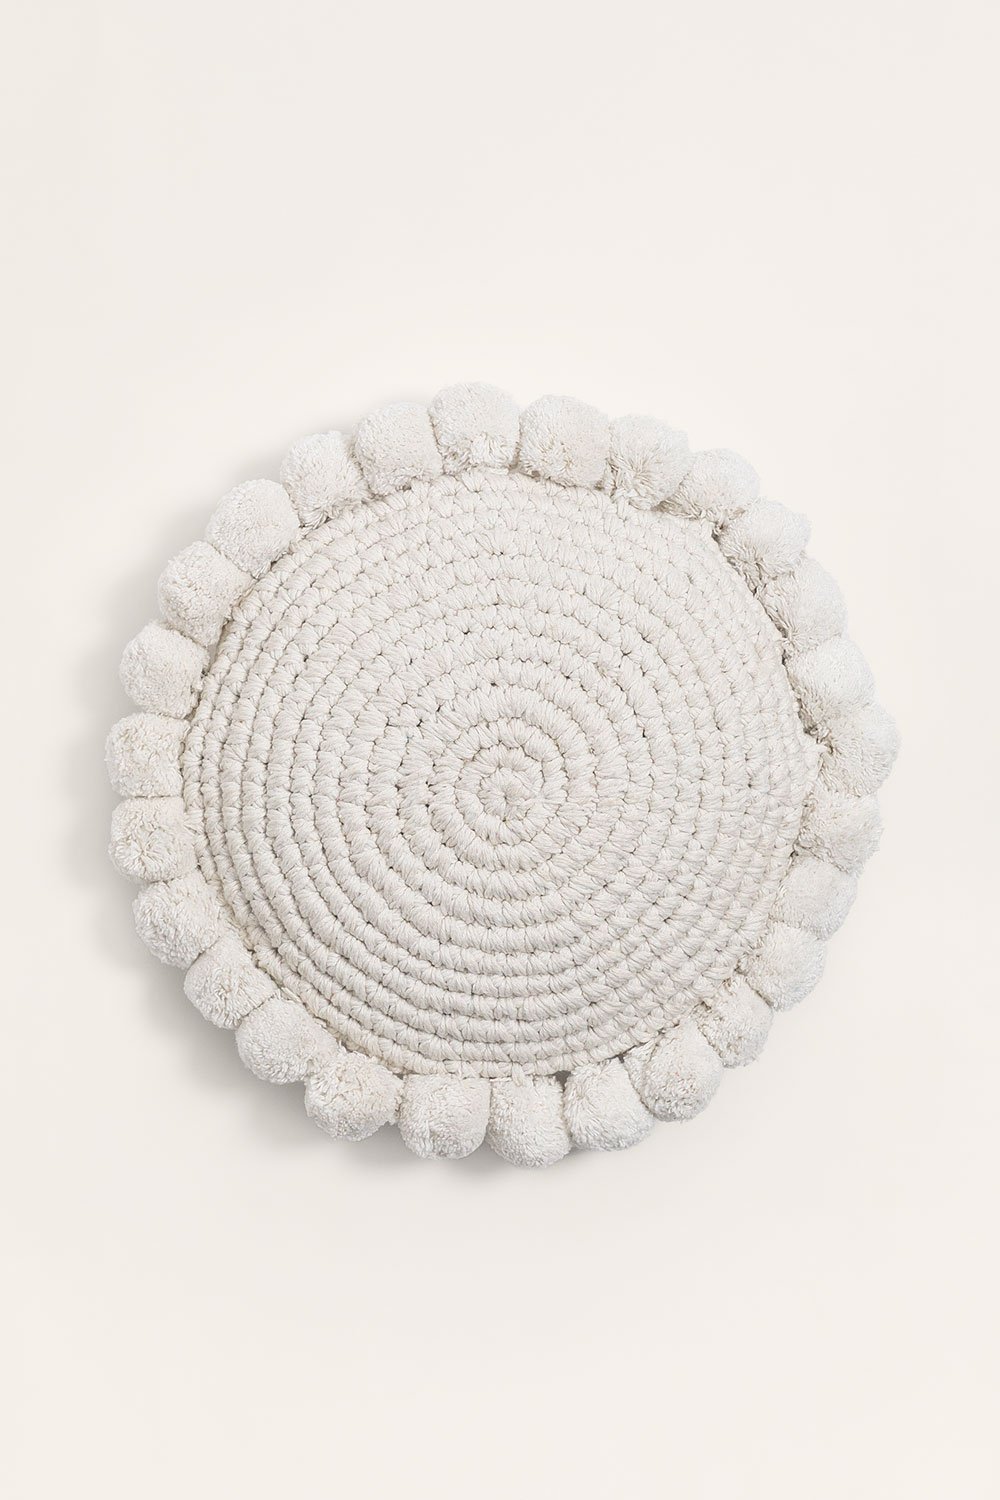 Cuscino rotondo in cotone (Ø30 cm) Yilda, immagine della galleria 1